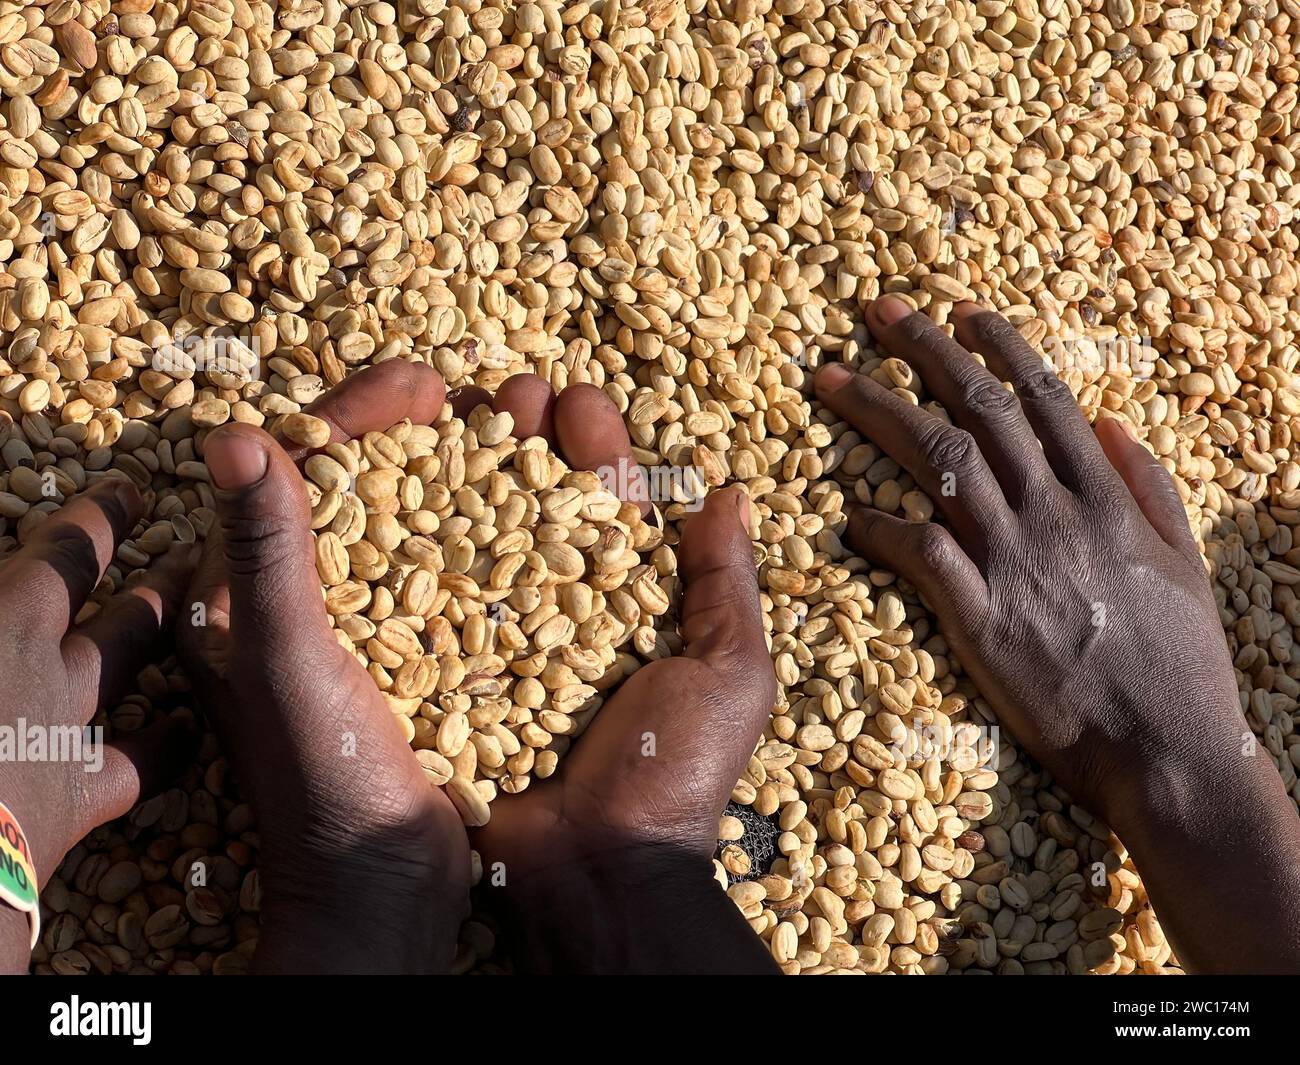 Mains de femmes montrant des grains de café secs dans le processus de séchage au soleil, le processus du miel, dans la région montagneuse de Sidama en Éthiopie Banque D'Images